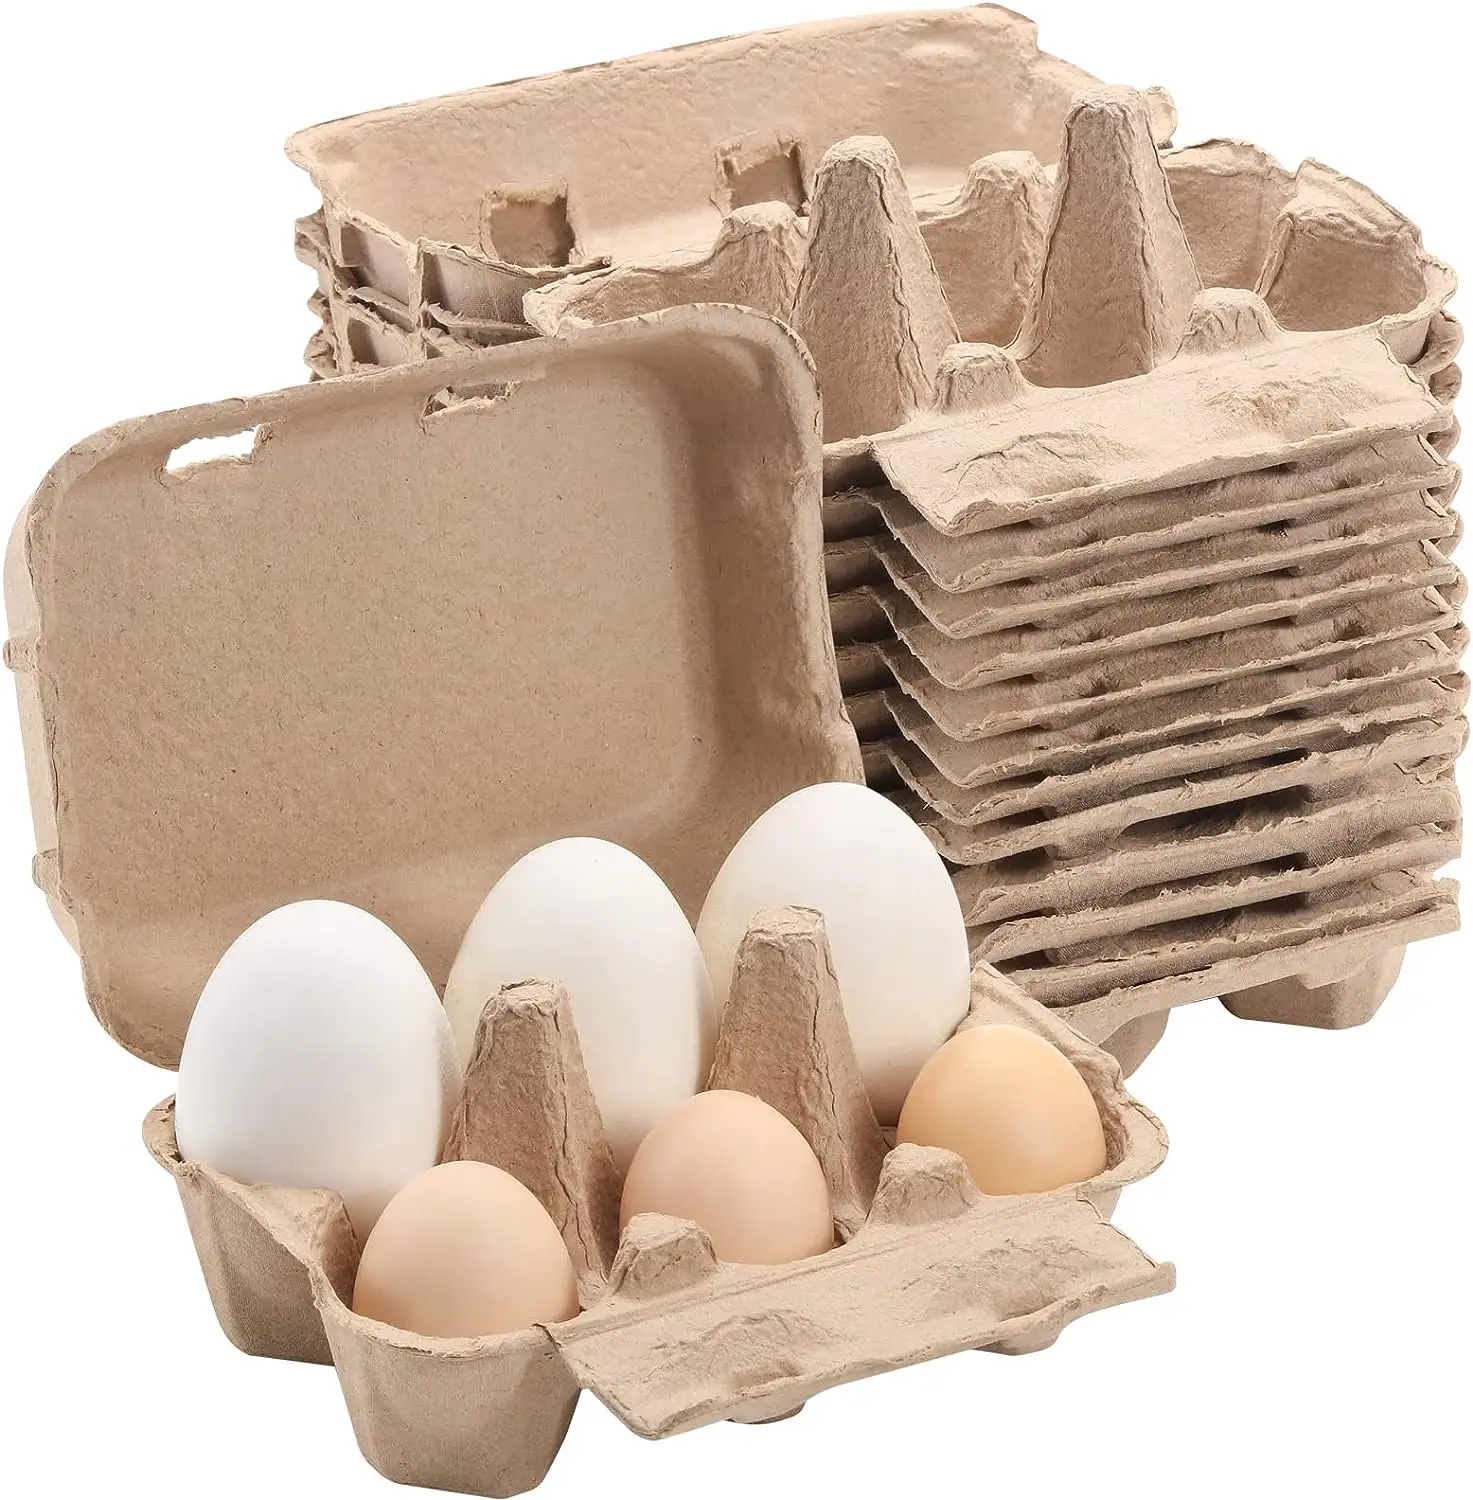 Ensemble de 20 cartons d'œufs colorés d'une demi-douzaine, cartons d'œufs en papier de pâte naturelle 6 pièces pour œufs de poule Plateau de rangement réutilisable de 5 couleurs